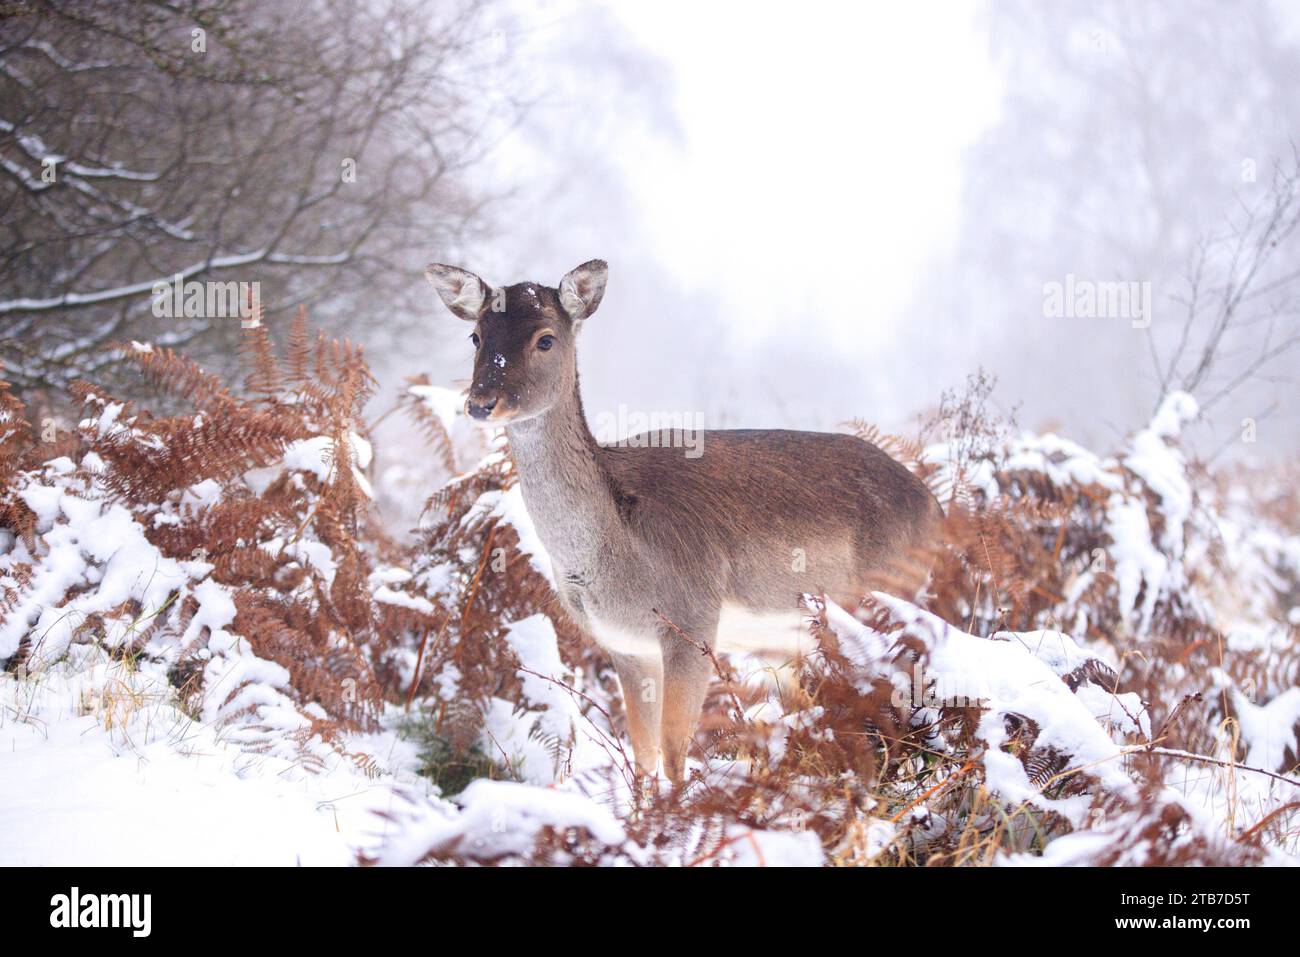 Il 3 dicembre sono state catturate le immagini COMICHE di un adorabile cervo a riposo che si sporca la lingua durante le nevicate. Contro il backdro Foto Stock